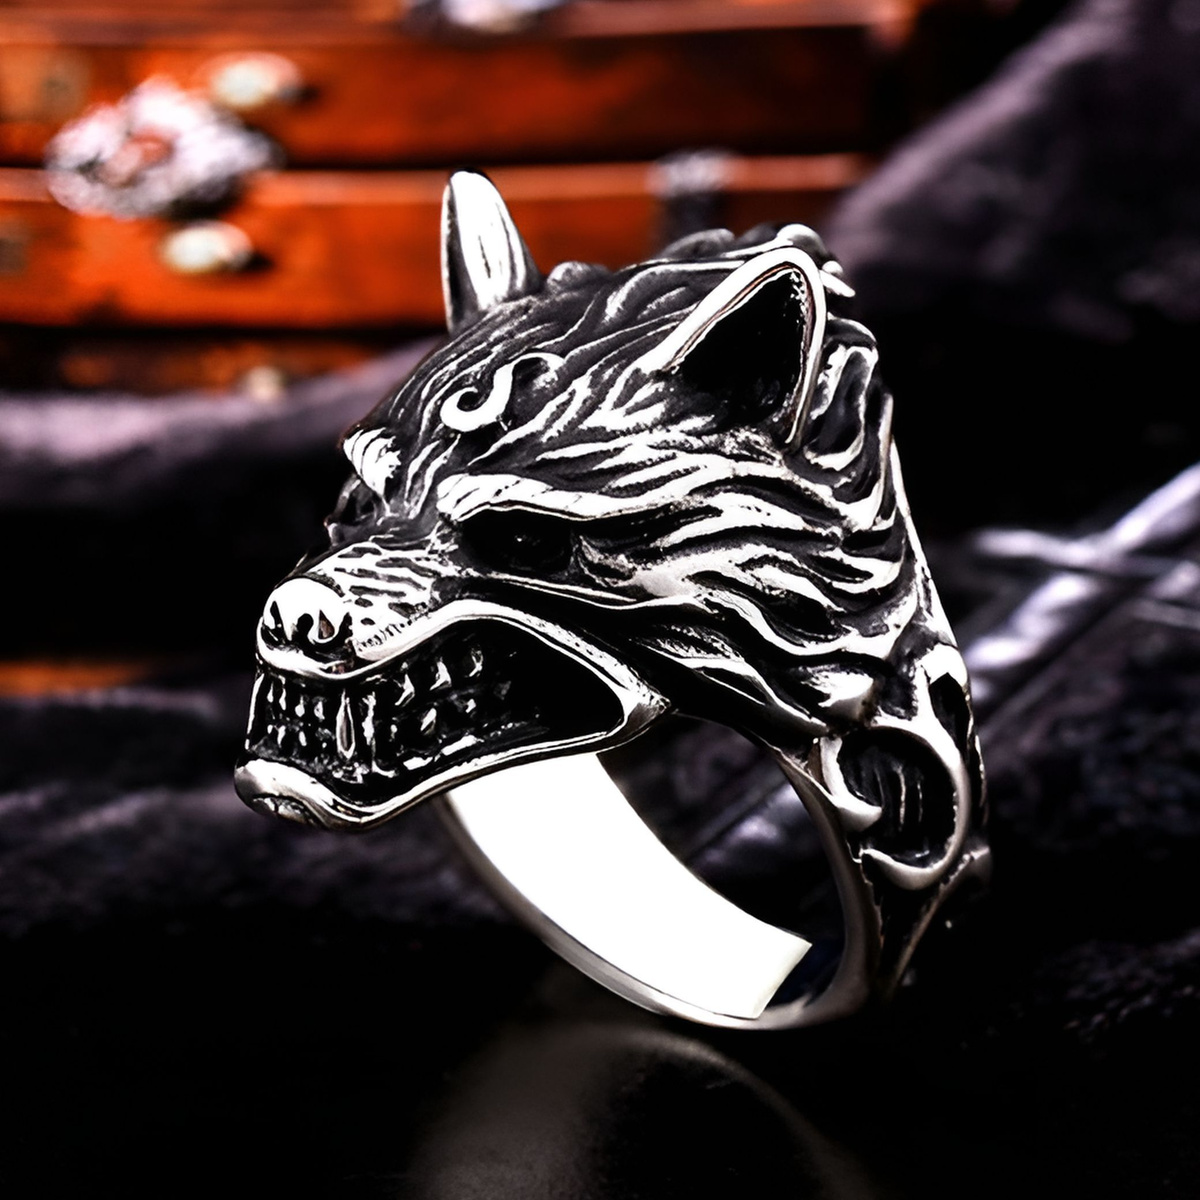 Кольцо волк, кольцо волк сереВолк кольцо, волк перстень, волк печатка, кольцо с волком мужское, кольцо с волком серебро, кольцо волк, перстень с волком, печатка с волком, кольцо викингов, перстень викинг, лютоволк, перстень байкерский печатка, кольцо готика перстень готический викинг